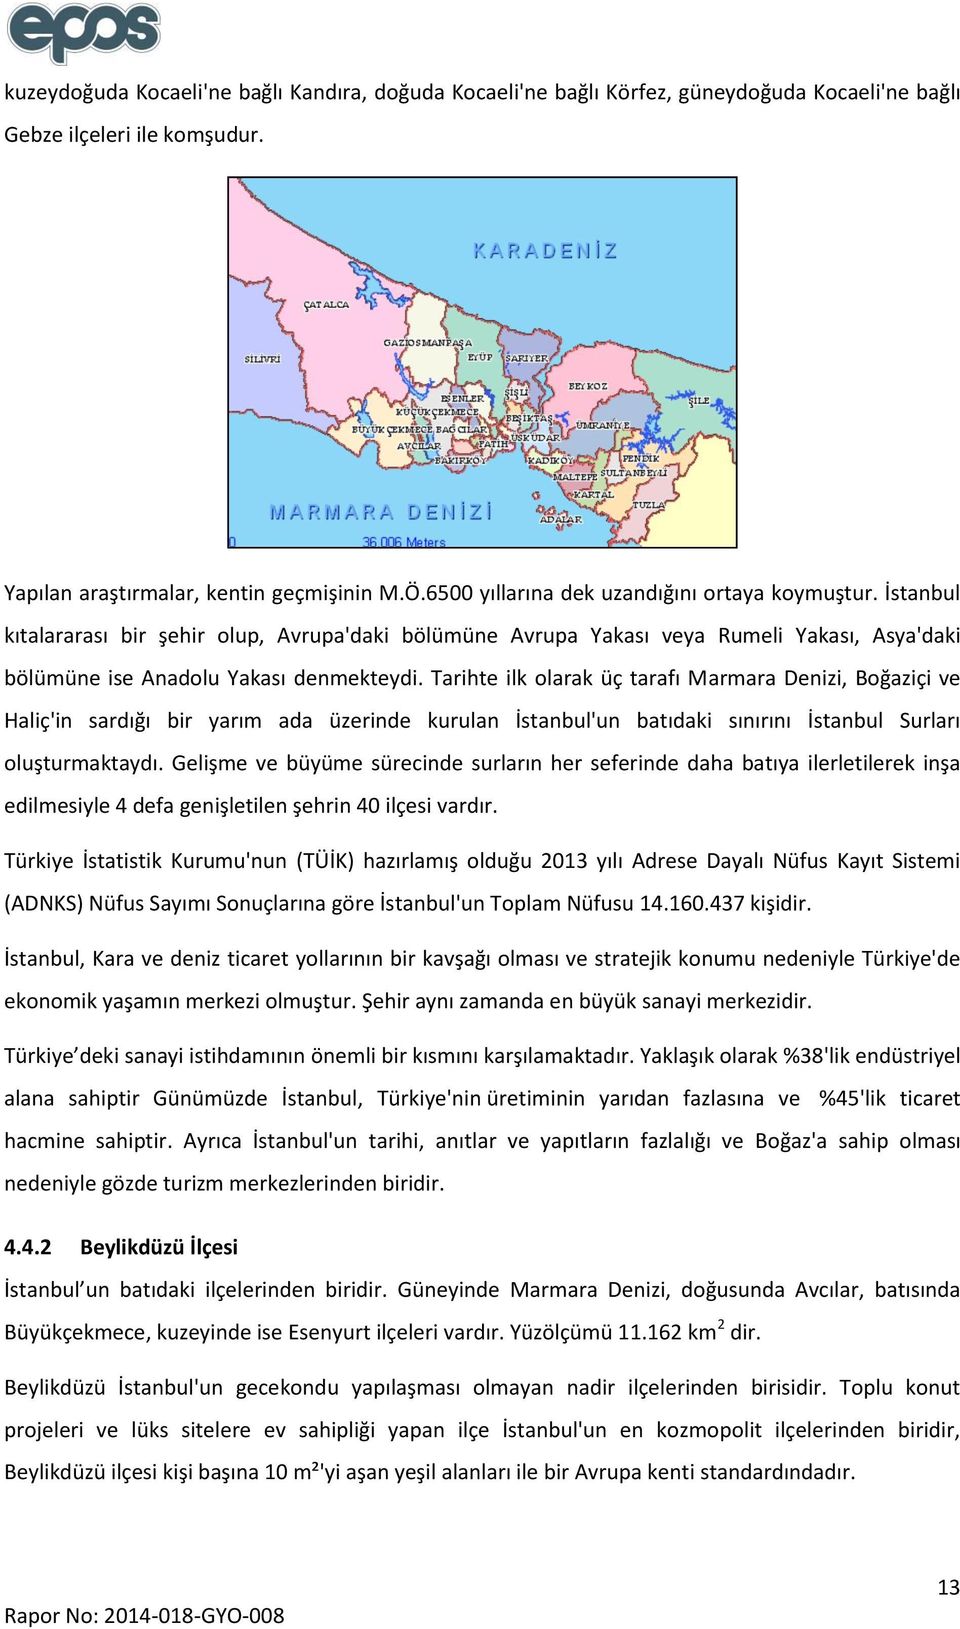 Tarihte ilk olarak üç tarafı Marmara Denizi, Boğaziçi ve Haliç'in sardığı bir yarım ada üzerinde kurulan İstanbul'un batıdaki sınırını İstanbul Surları oluşturmaktaydı.